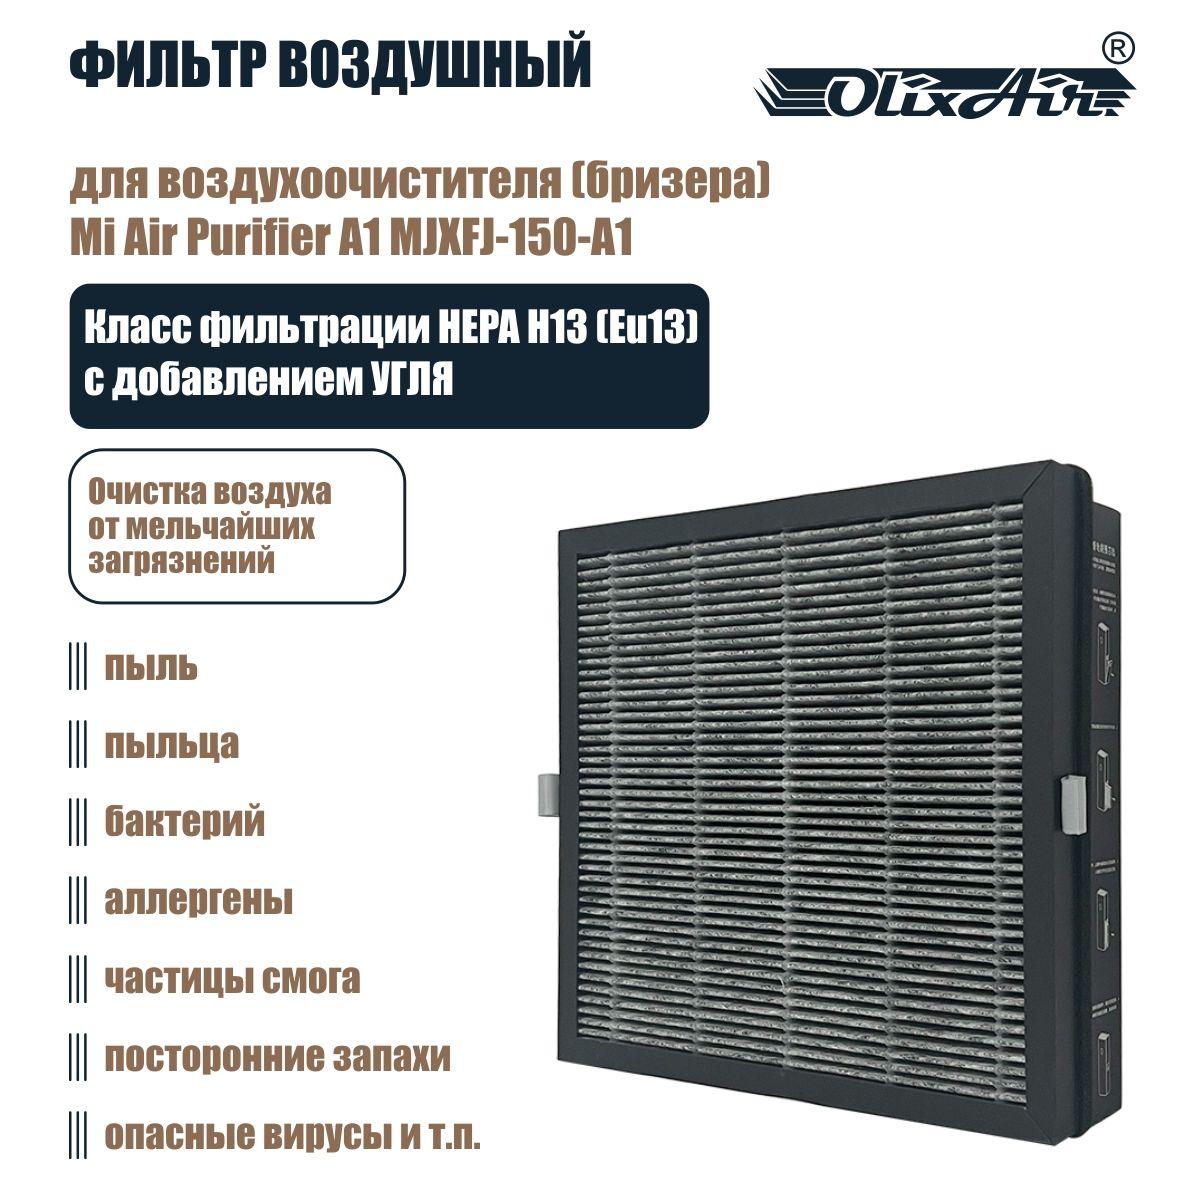 КомпозитныйфильтрсдобавлениемуглядлявоздухоочистителяMiAirPurifierA1(MJXFJ-150-A1)сRFID-меткой.X150C